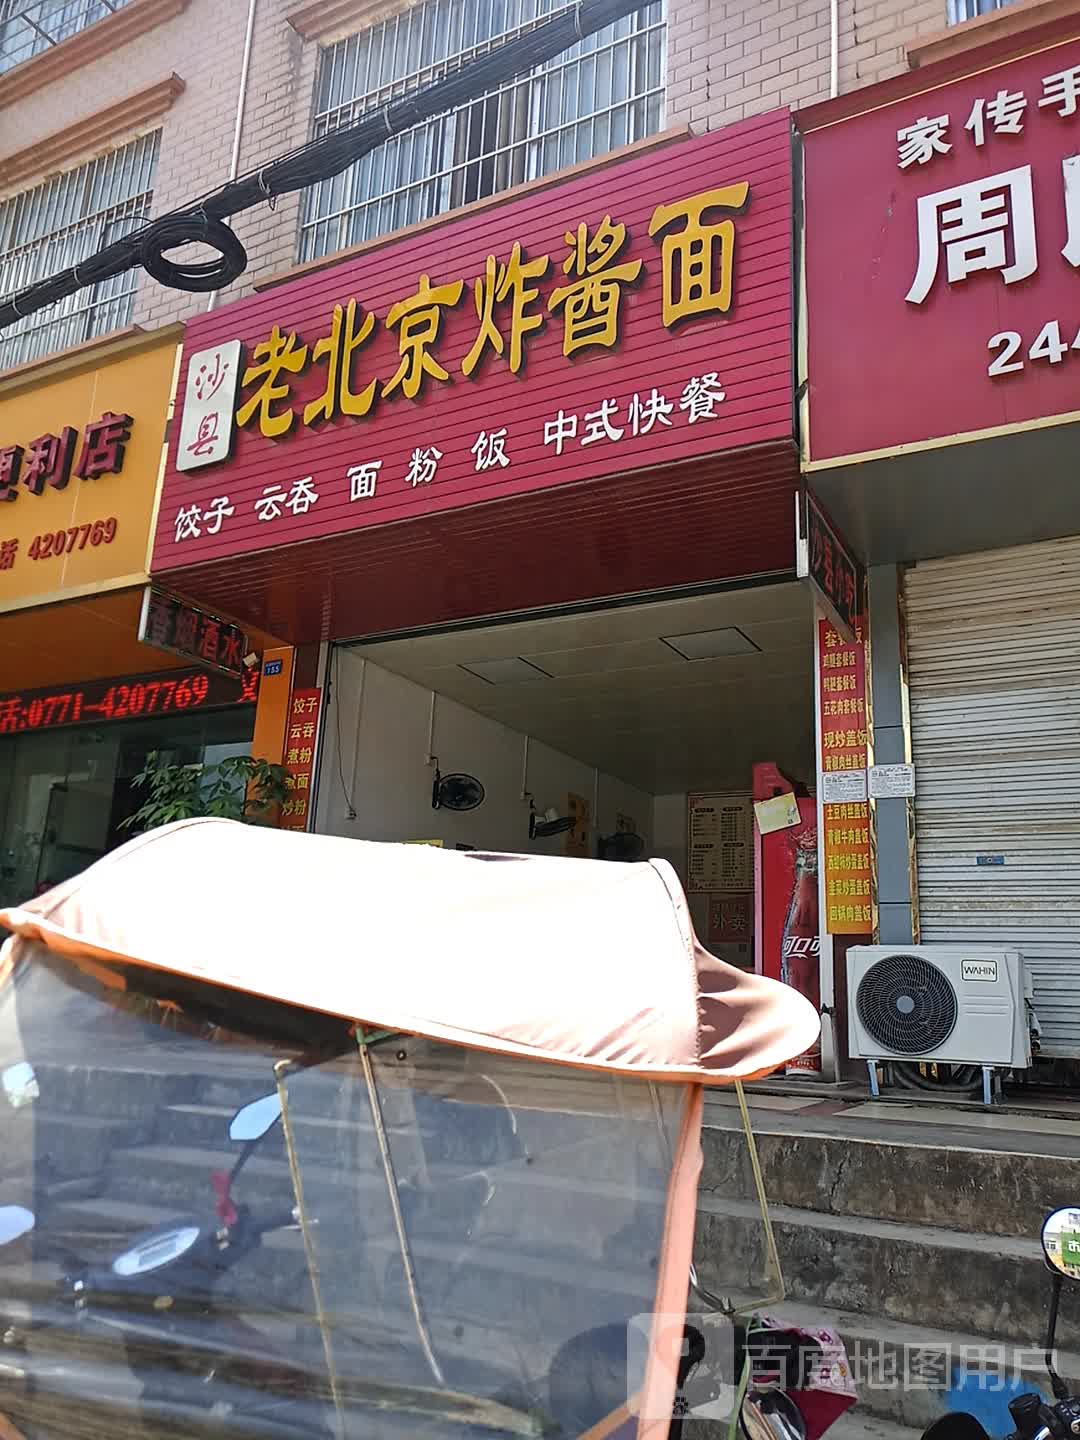 老北京炸酱面门店图片